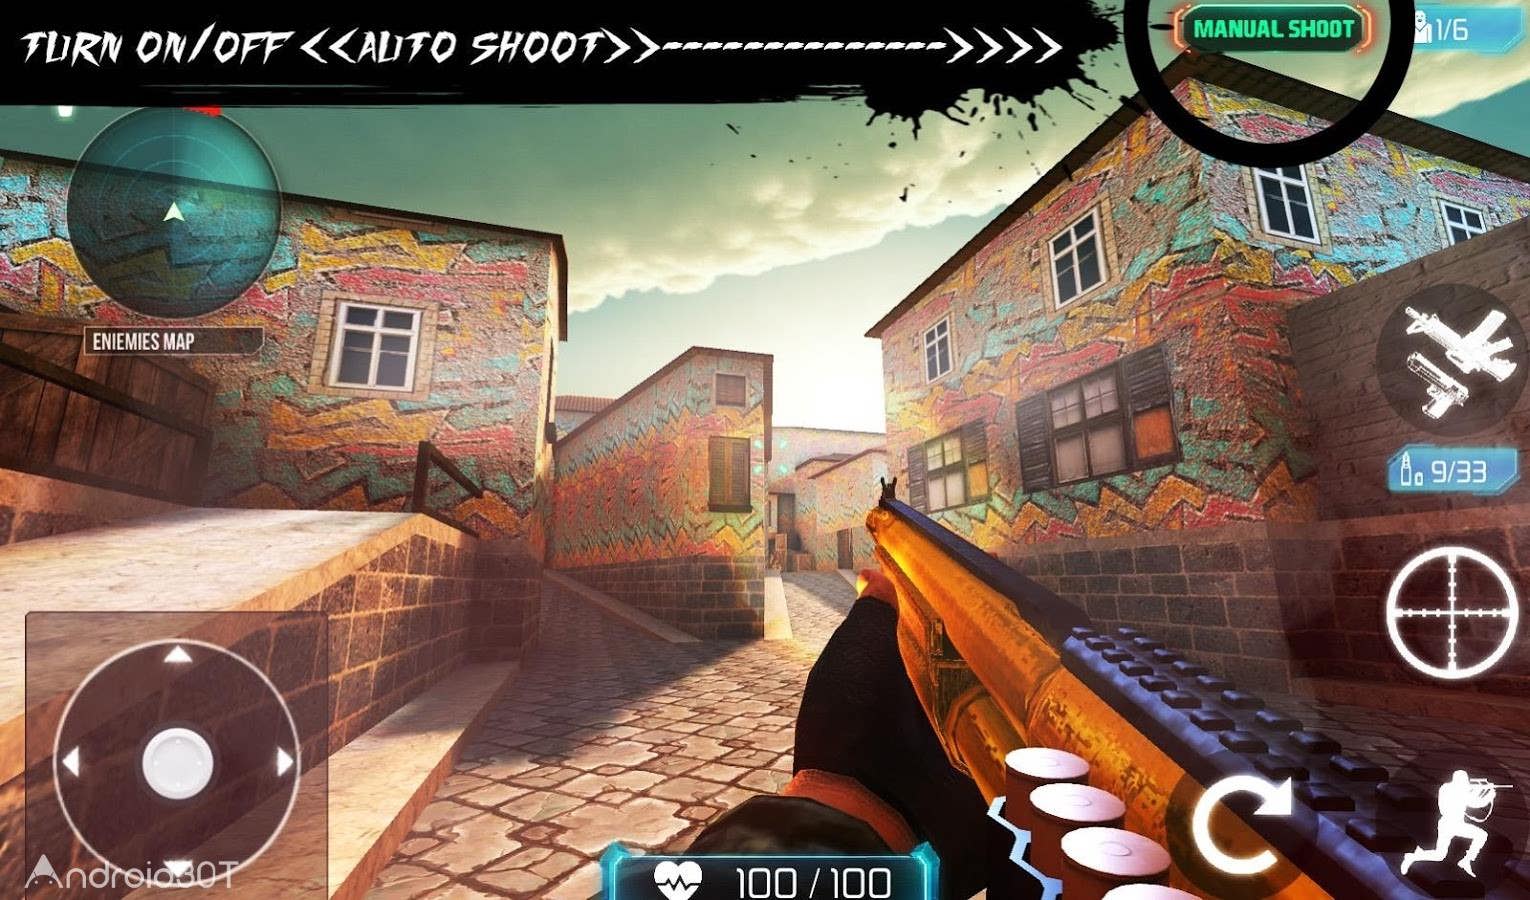 دانلود Counter Terrorist 2 – Gun Strike 1.05 – بازی اکشن کانتر تروریست 2 اندروید